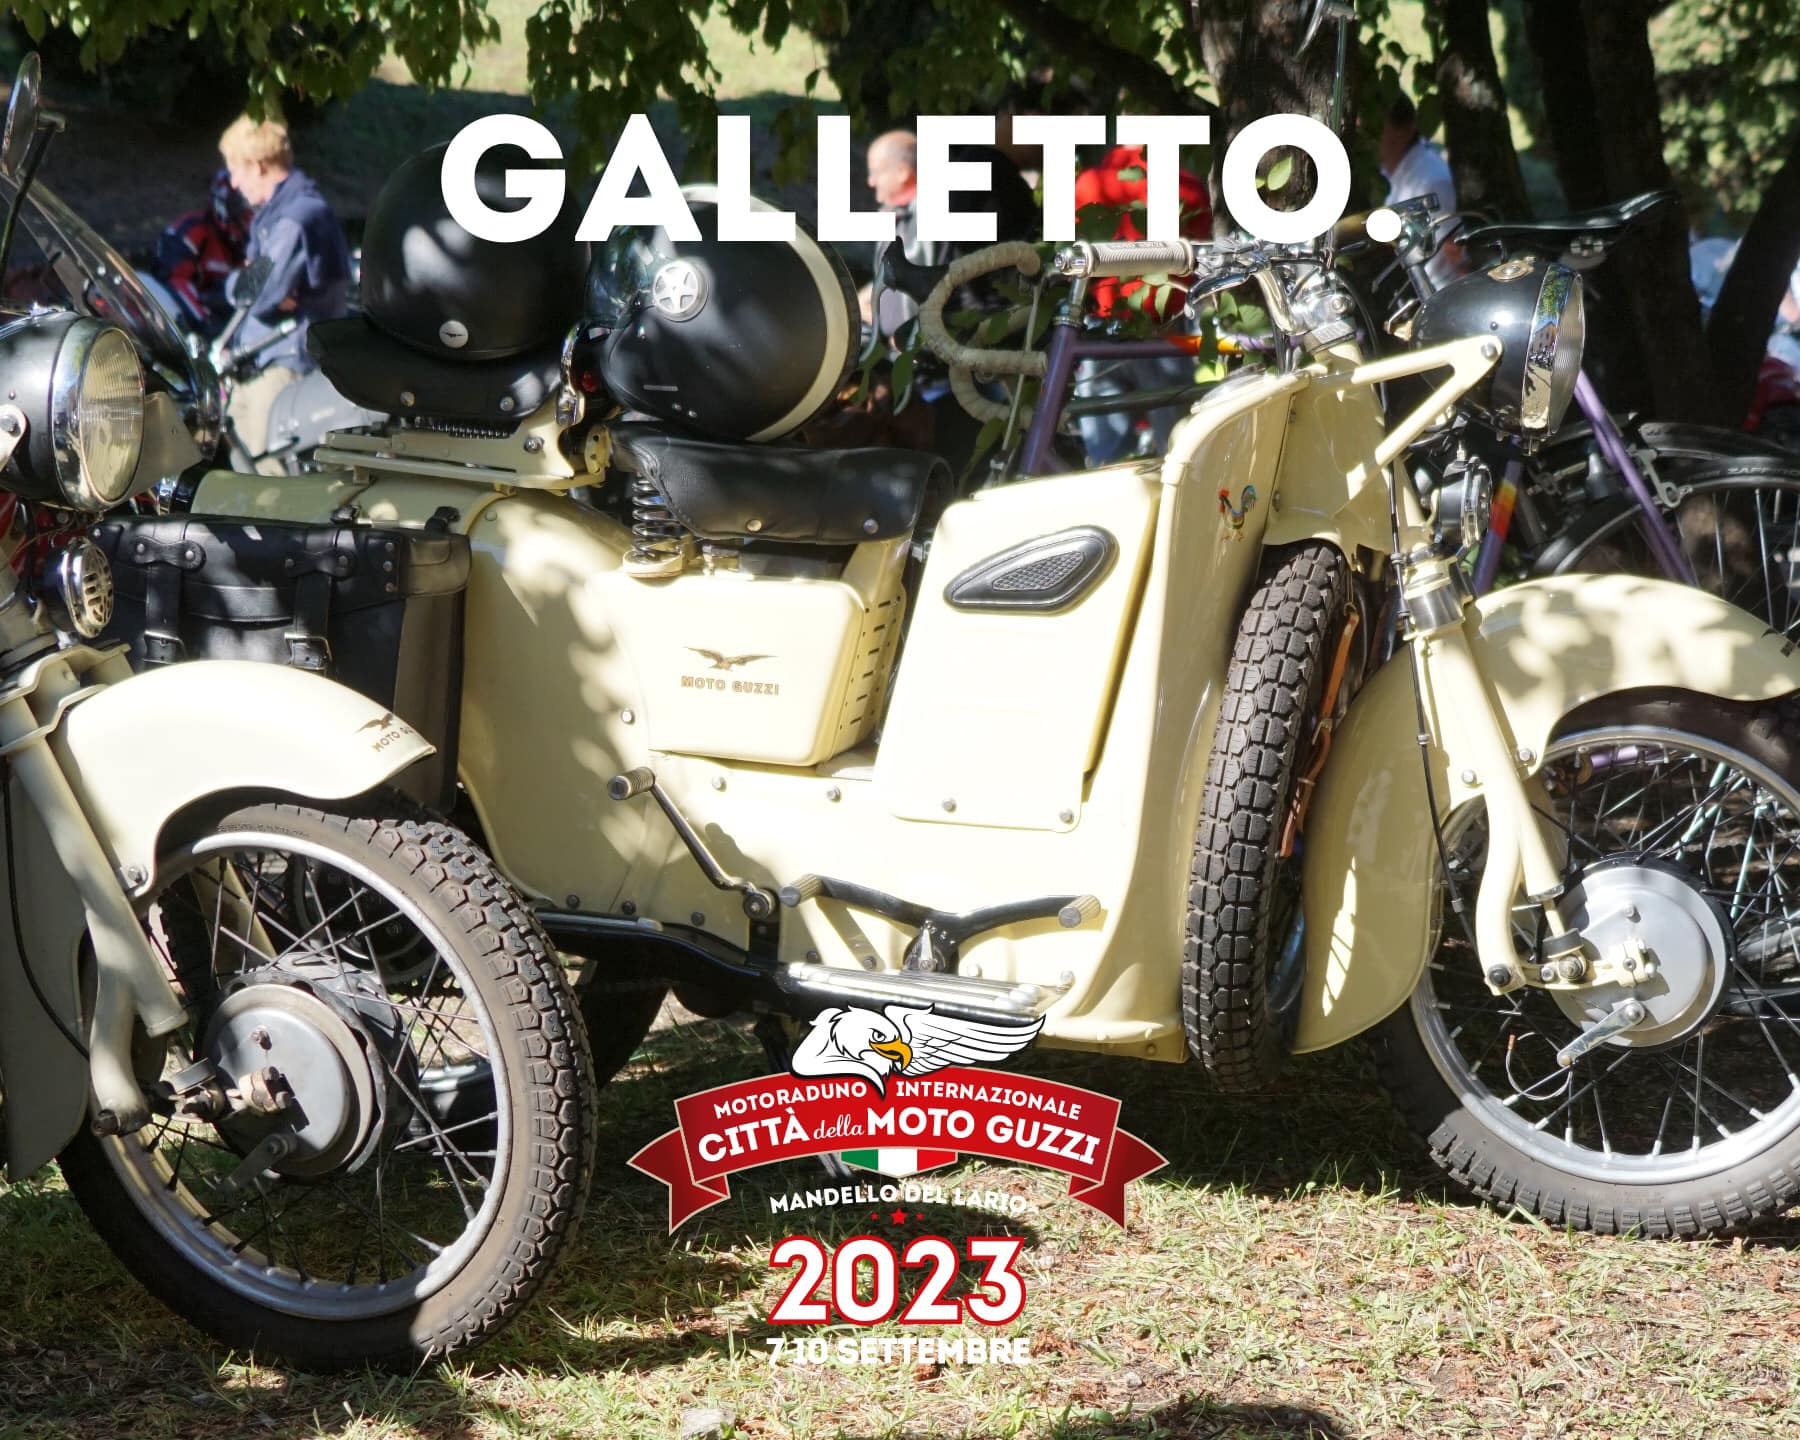 Motoraduno Internazionale Città della Moto Guzzi 2023 - Galletto